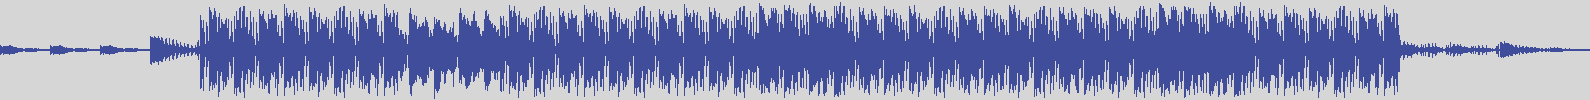 noclouds_chillout [NOC005] Alvar Davis - Lio [Chill Mix] audio wave form